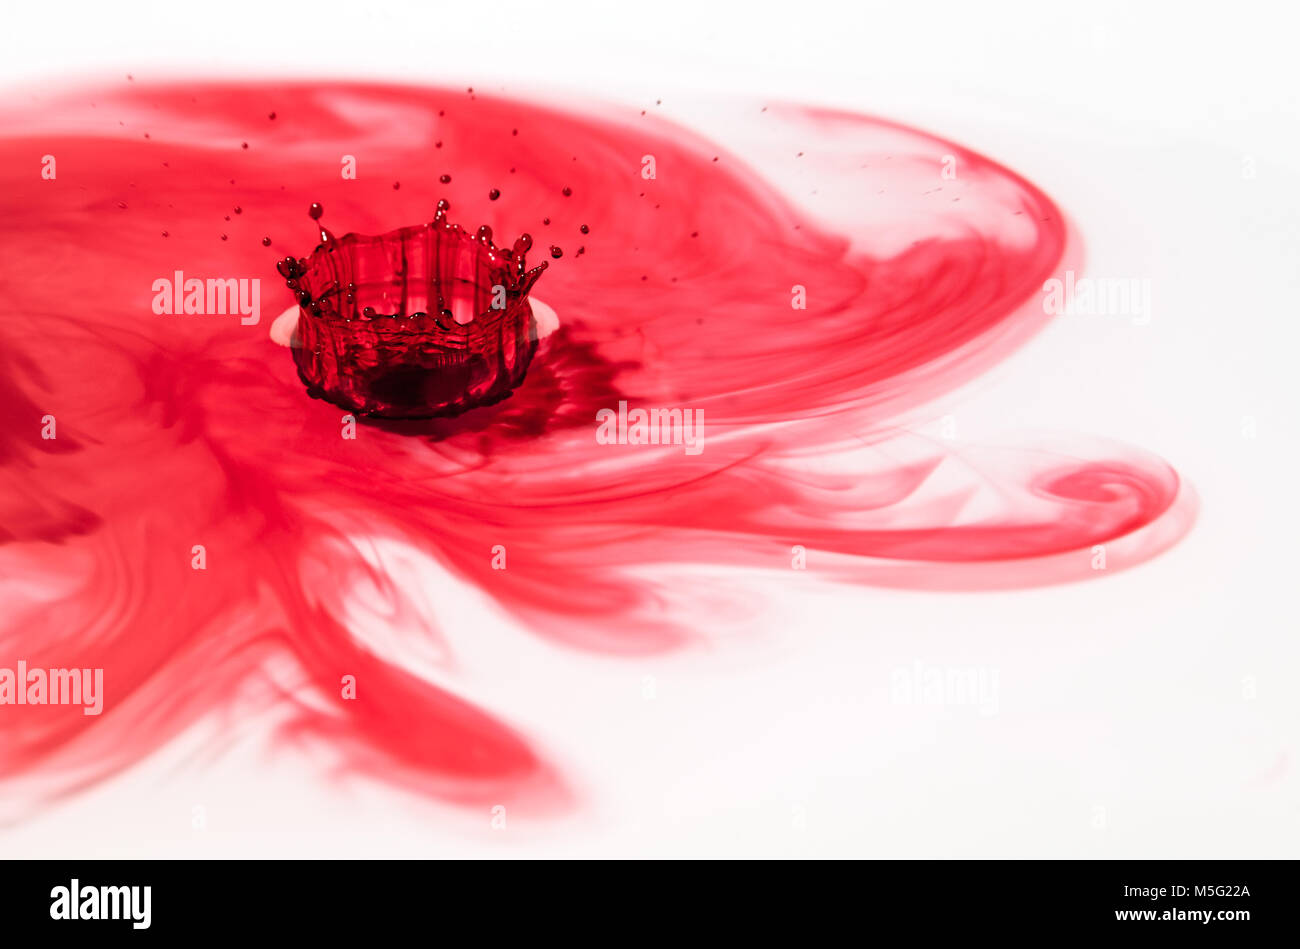 Kreative Fotografie, Bild von dem, was im Wasser tropfen Fotografie bekannt ist als Wasser Splash Krone. Ein roter Tropfen Wasser auf die Auswirkungen mit einer Fläche Stockfoto